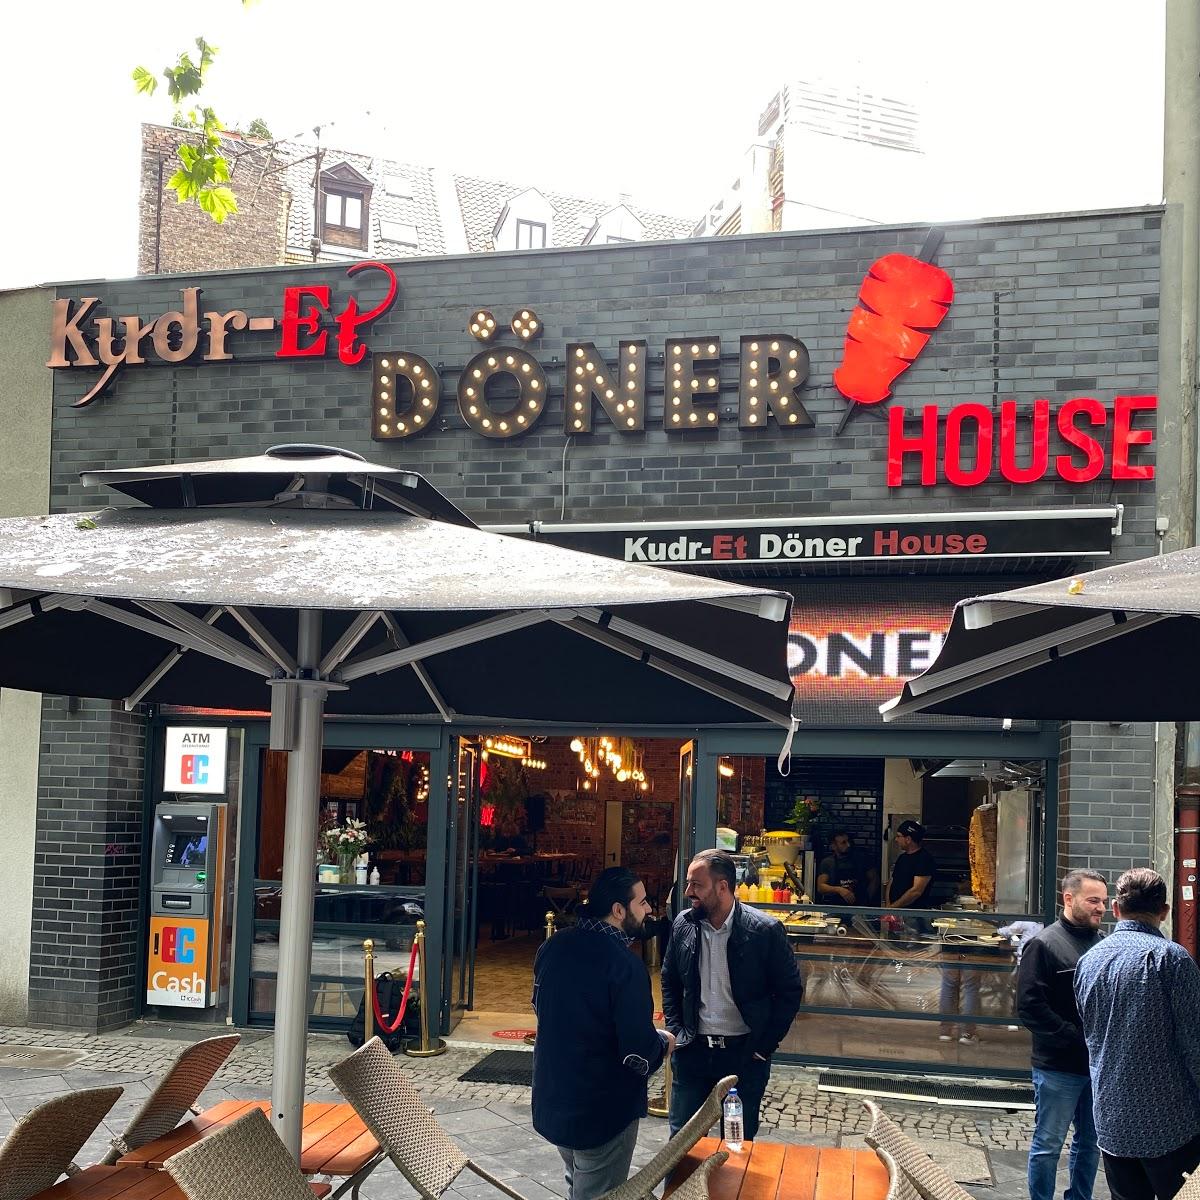 Restaurant "Kudr-et Döner House" in Köln